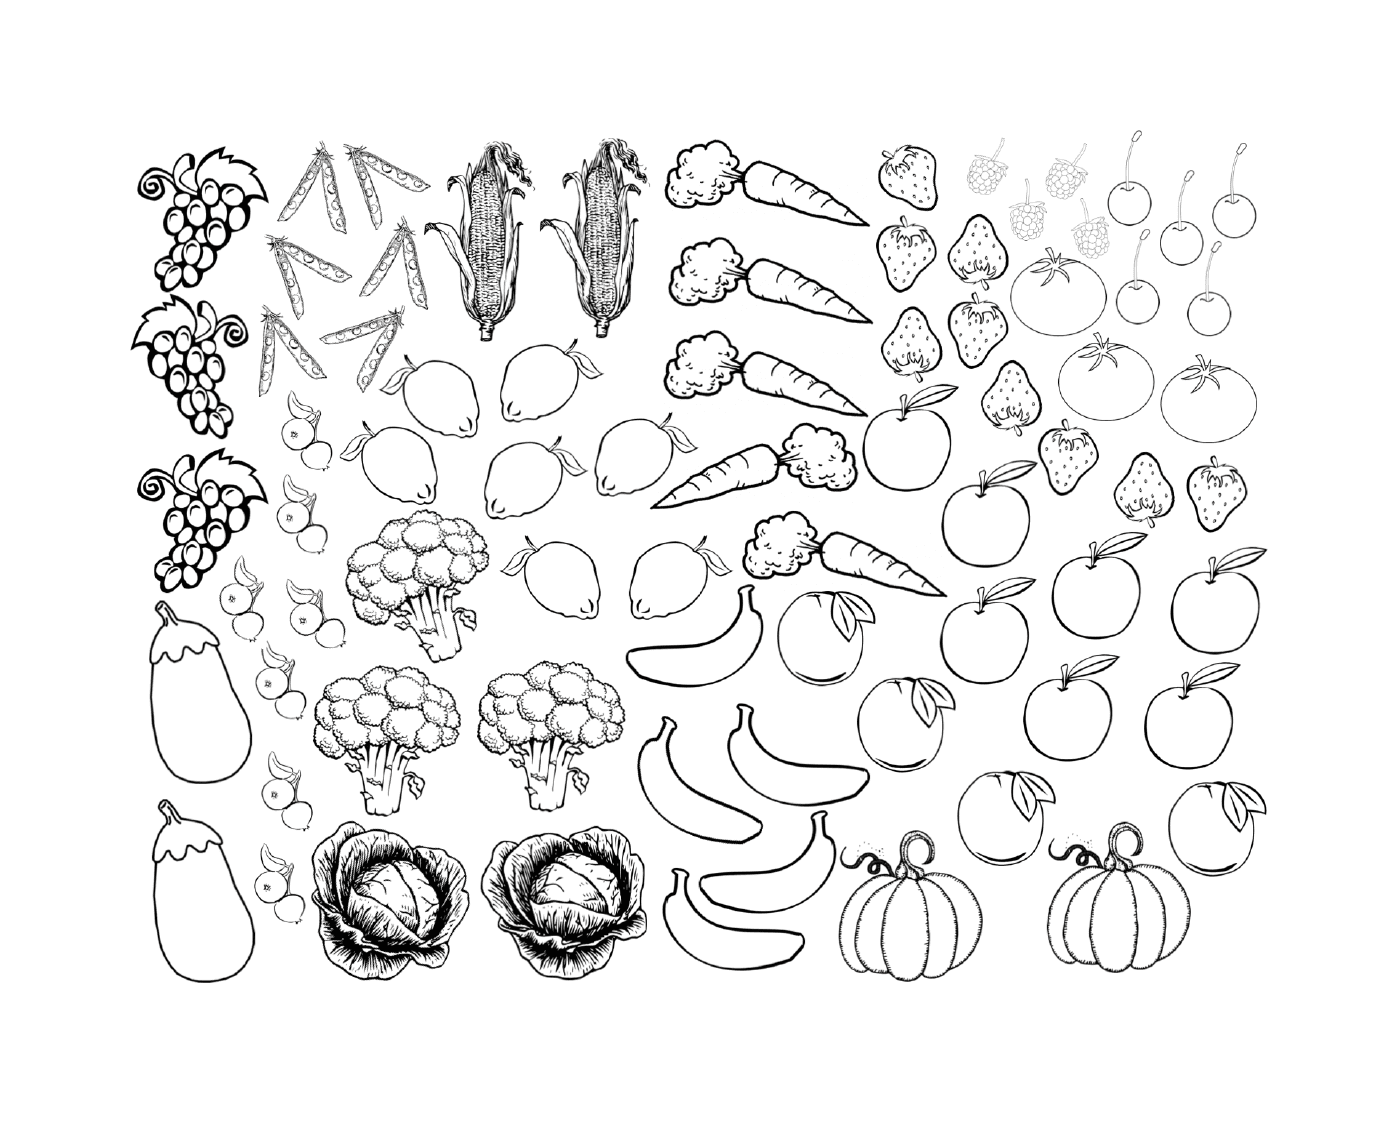  Frutas e legumes em ilustração 